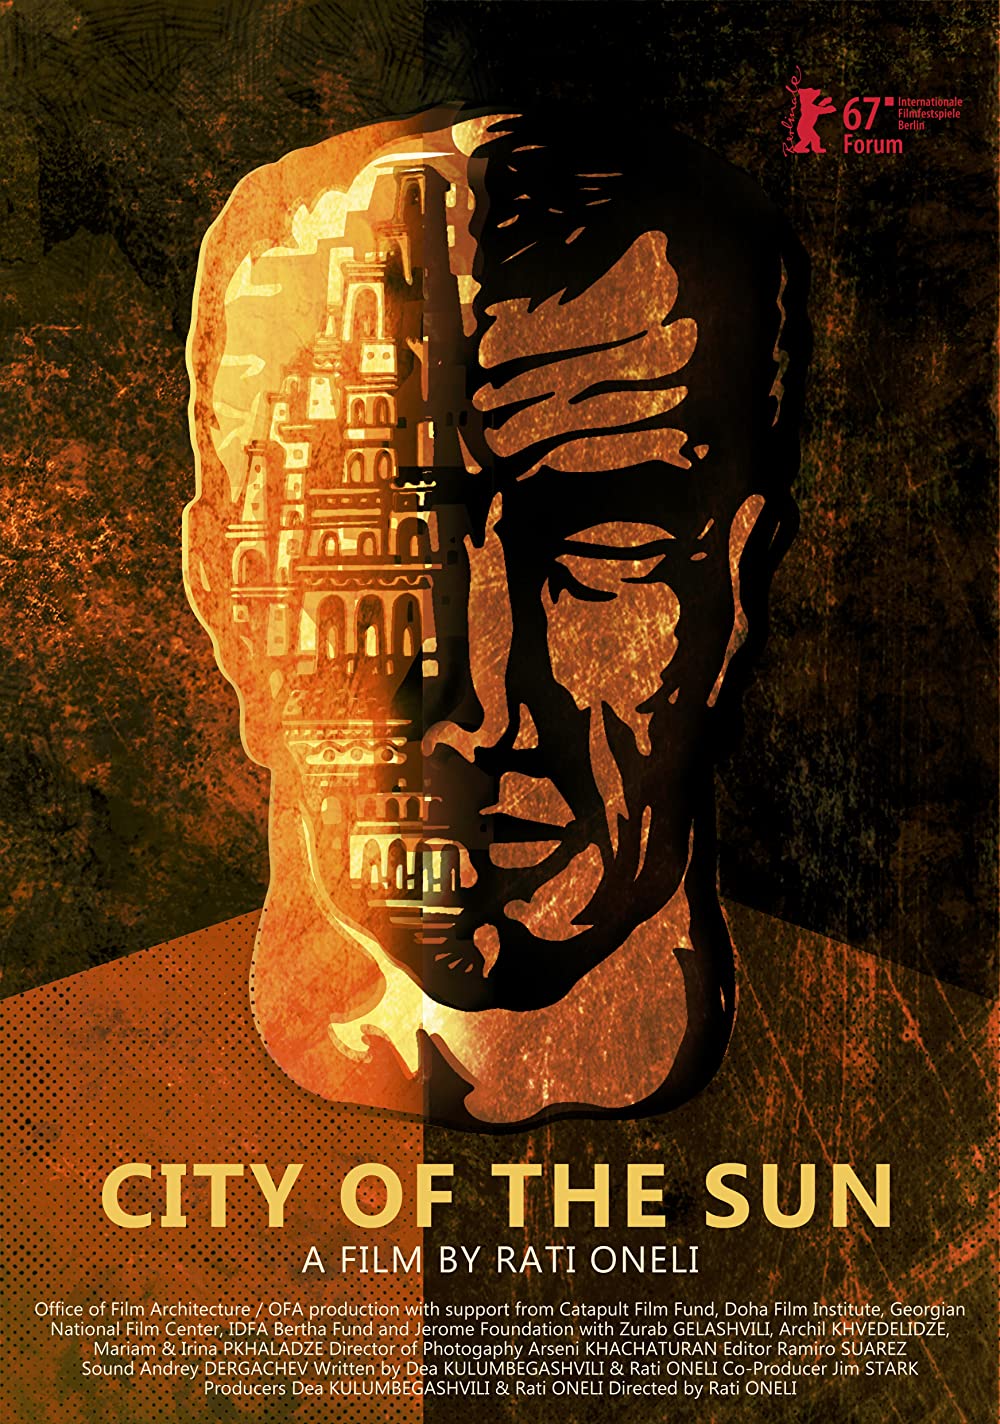 Filmbeschreibung zu City of the Sun